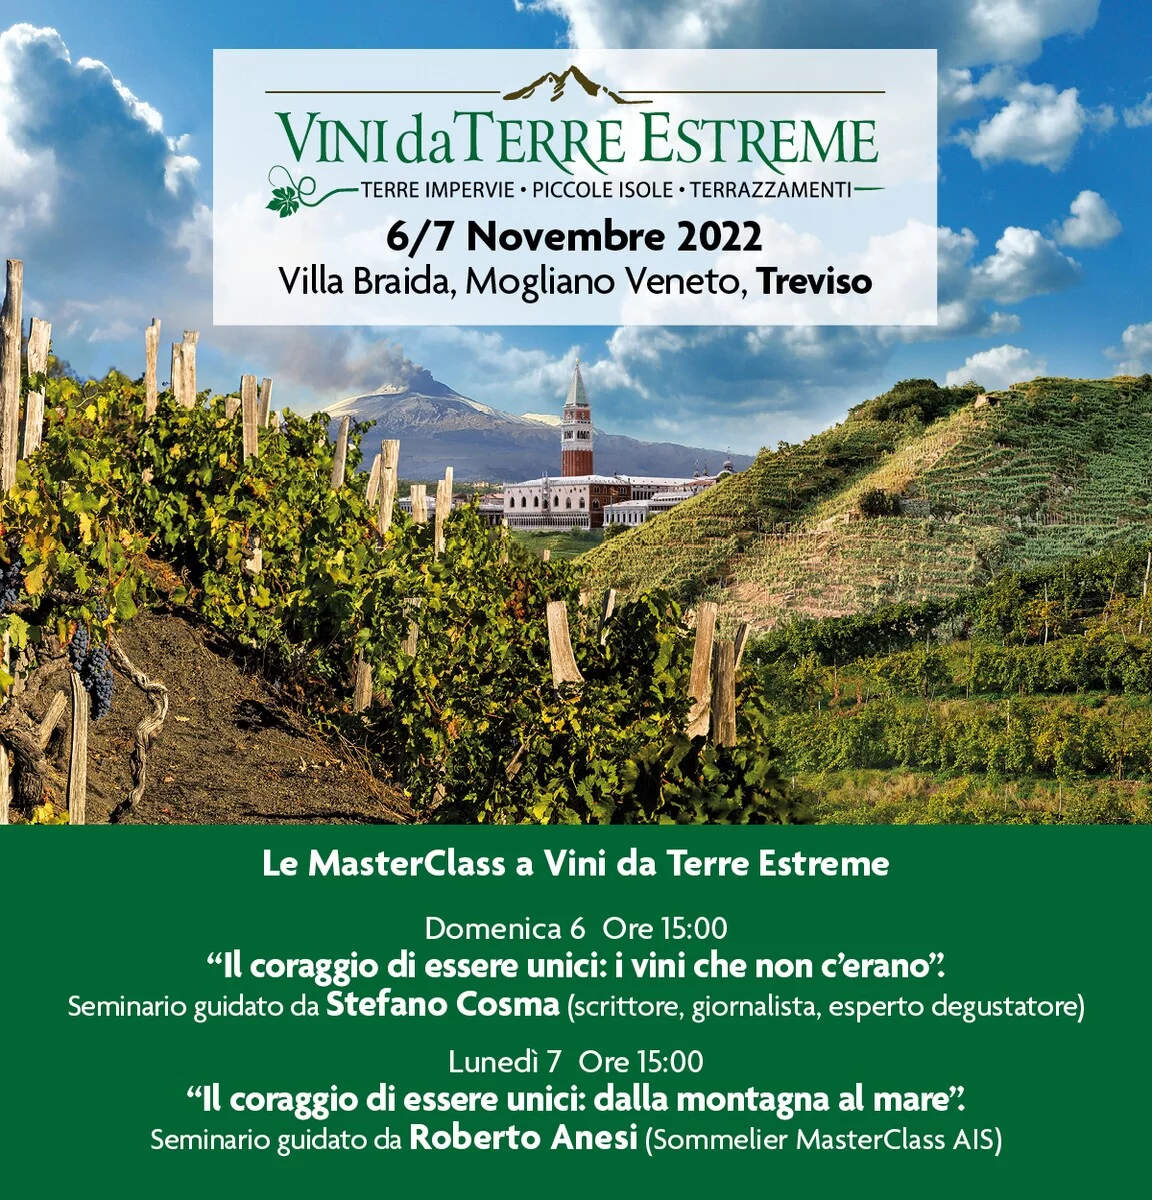 Vini da Terre Estreme – Villa Braida – Mogliano Veneto (TV) Novembre 2022